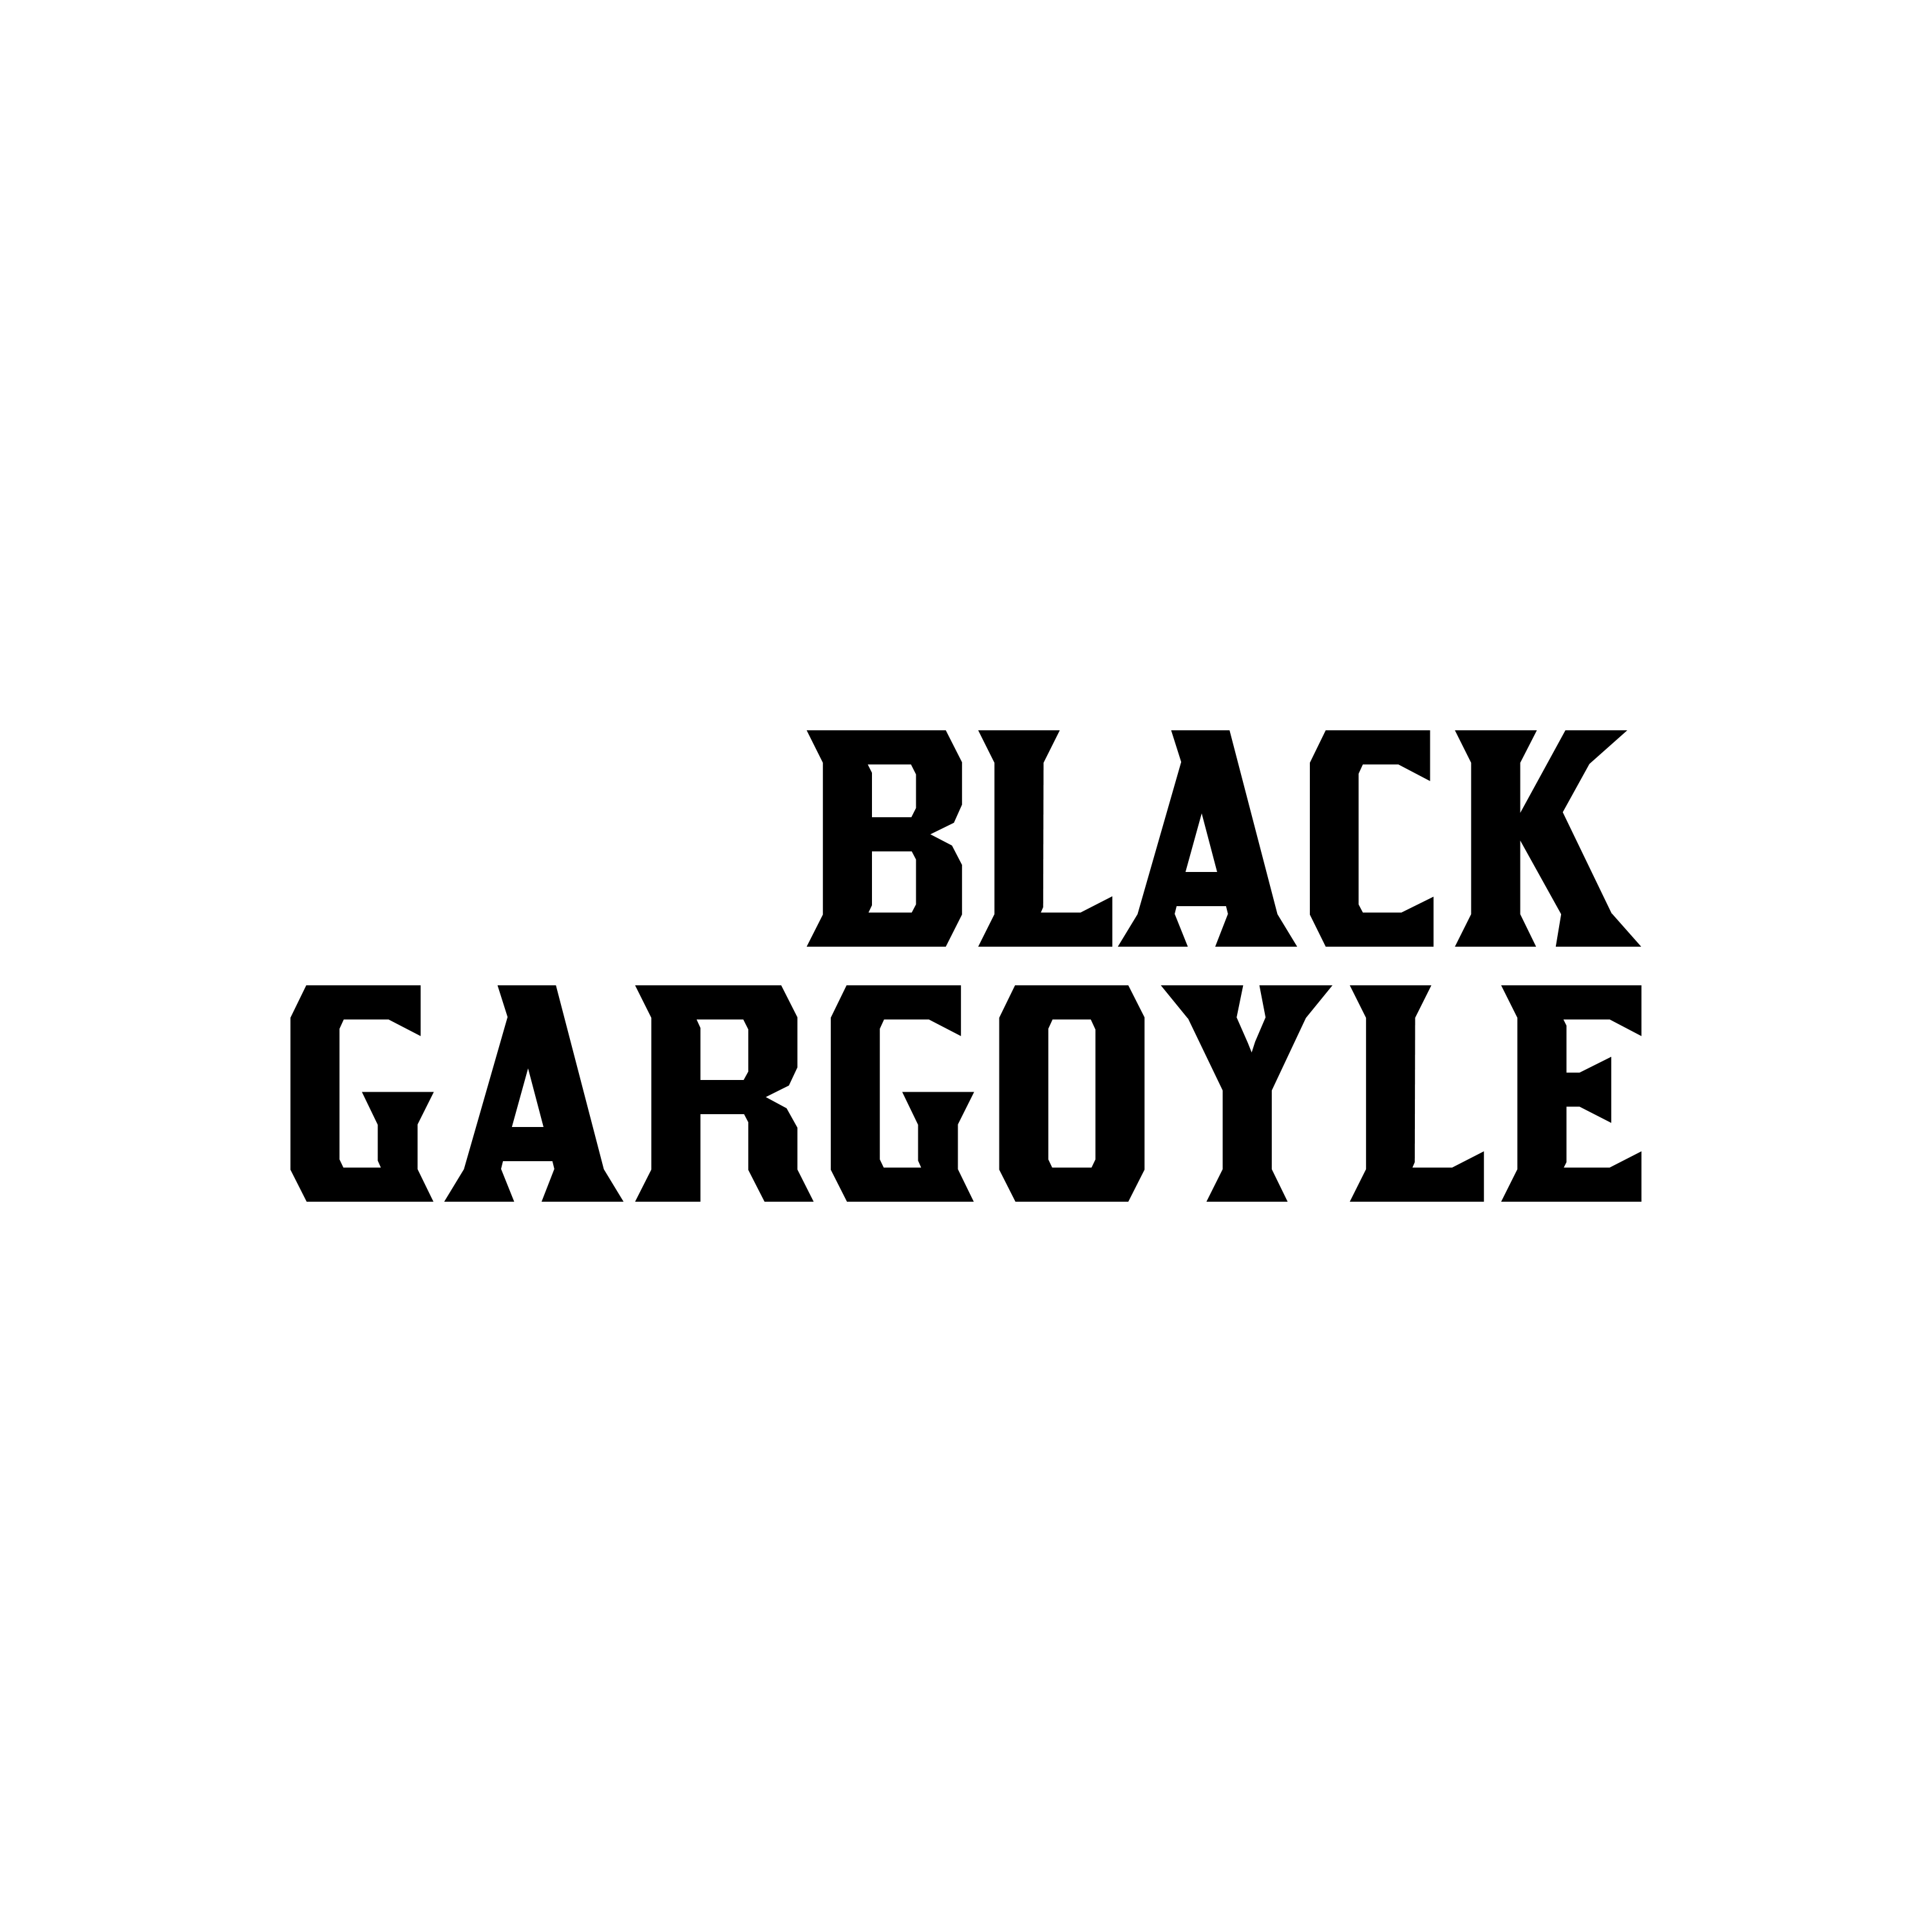 Black Gargoyle